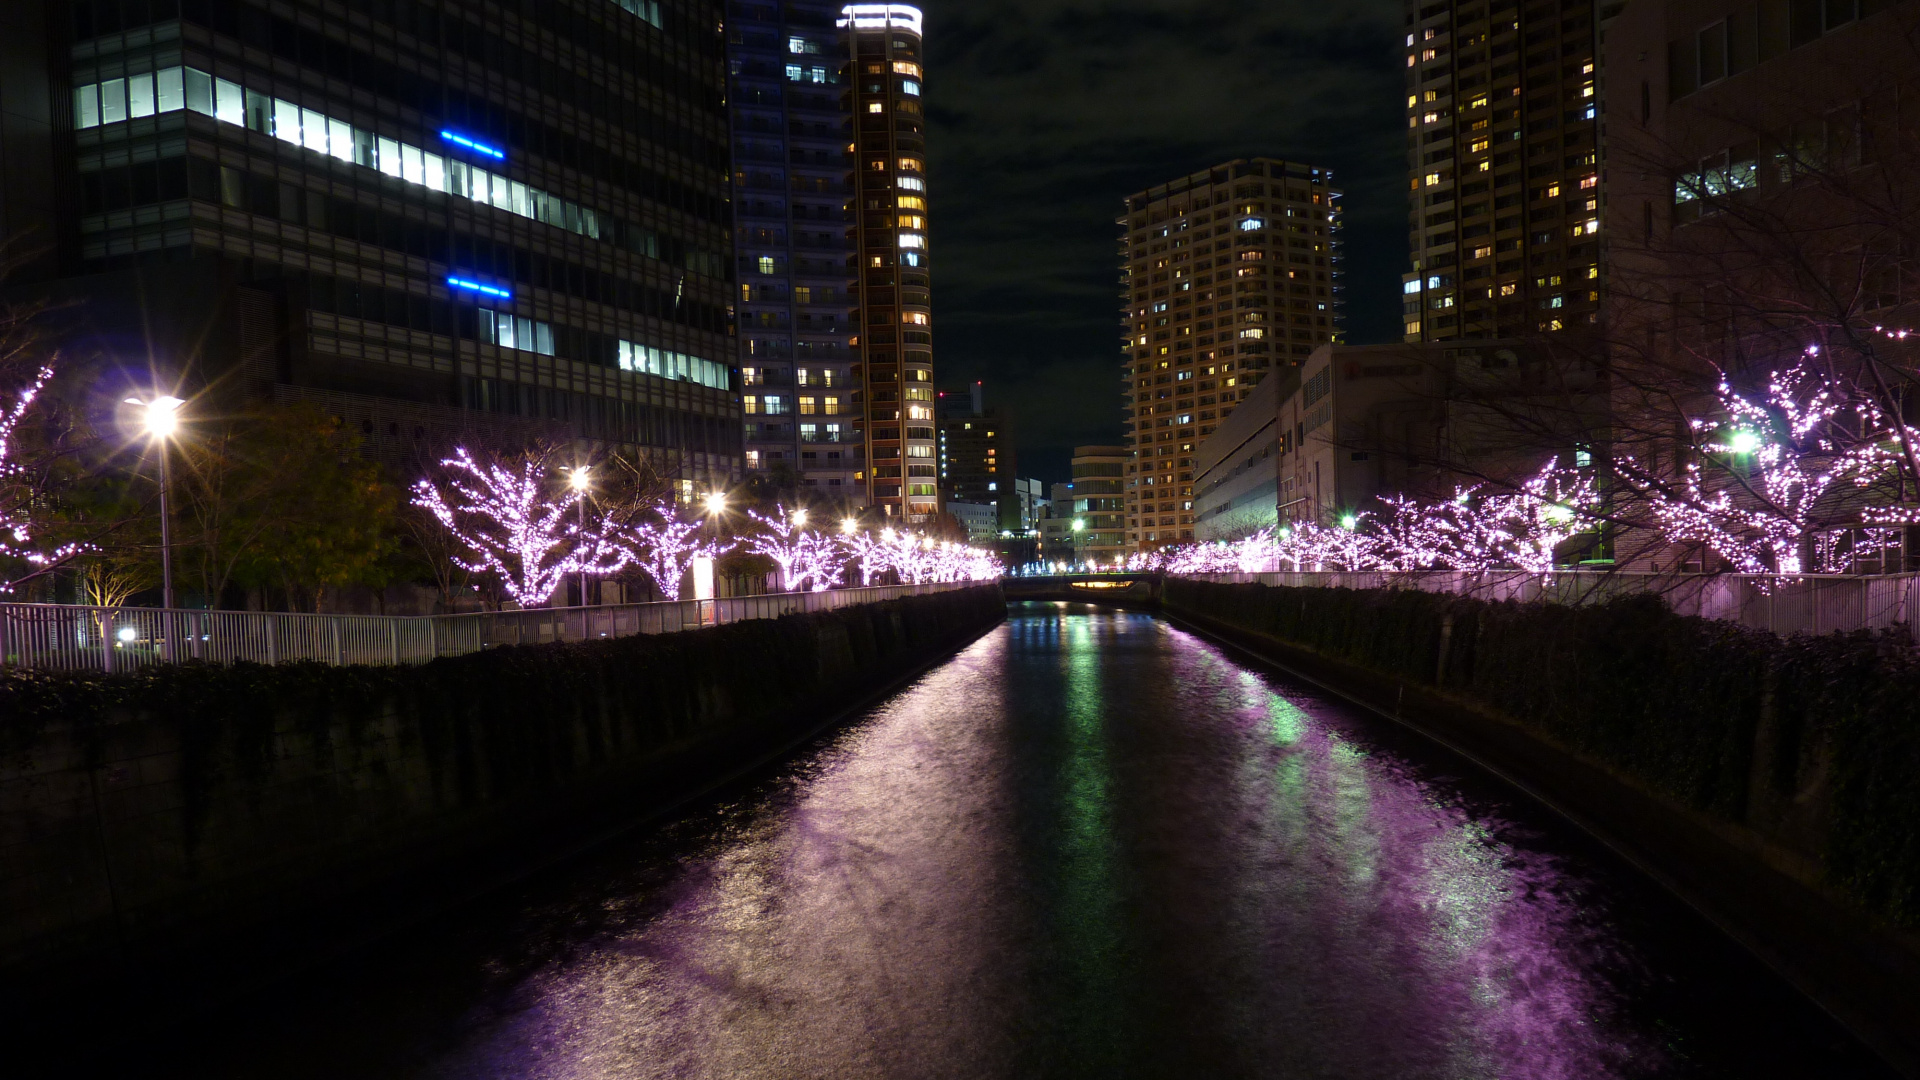 Luces Púrpuras en el Puente Durante la Noche. Wallpaper in 1920x1080 Resolution